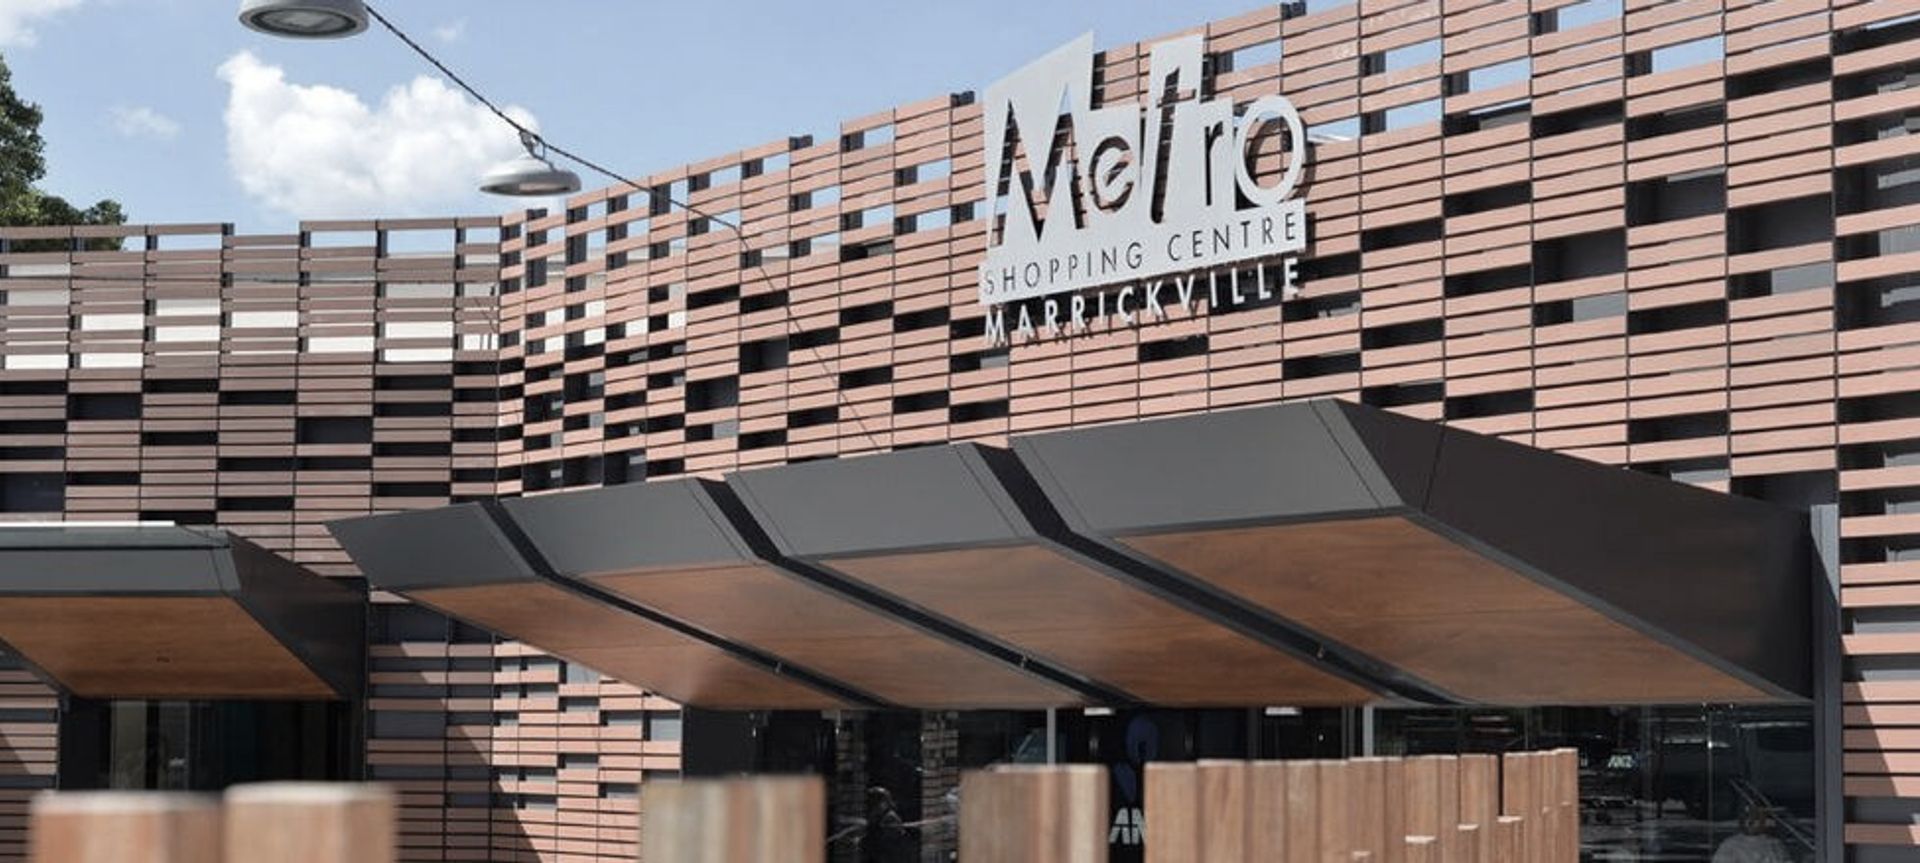 Marrickville Metro Shopping Centre banner